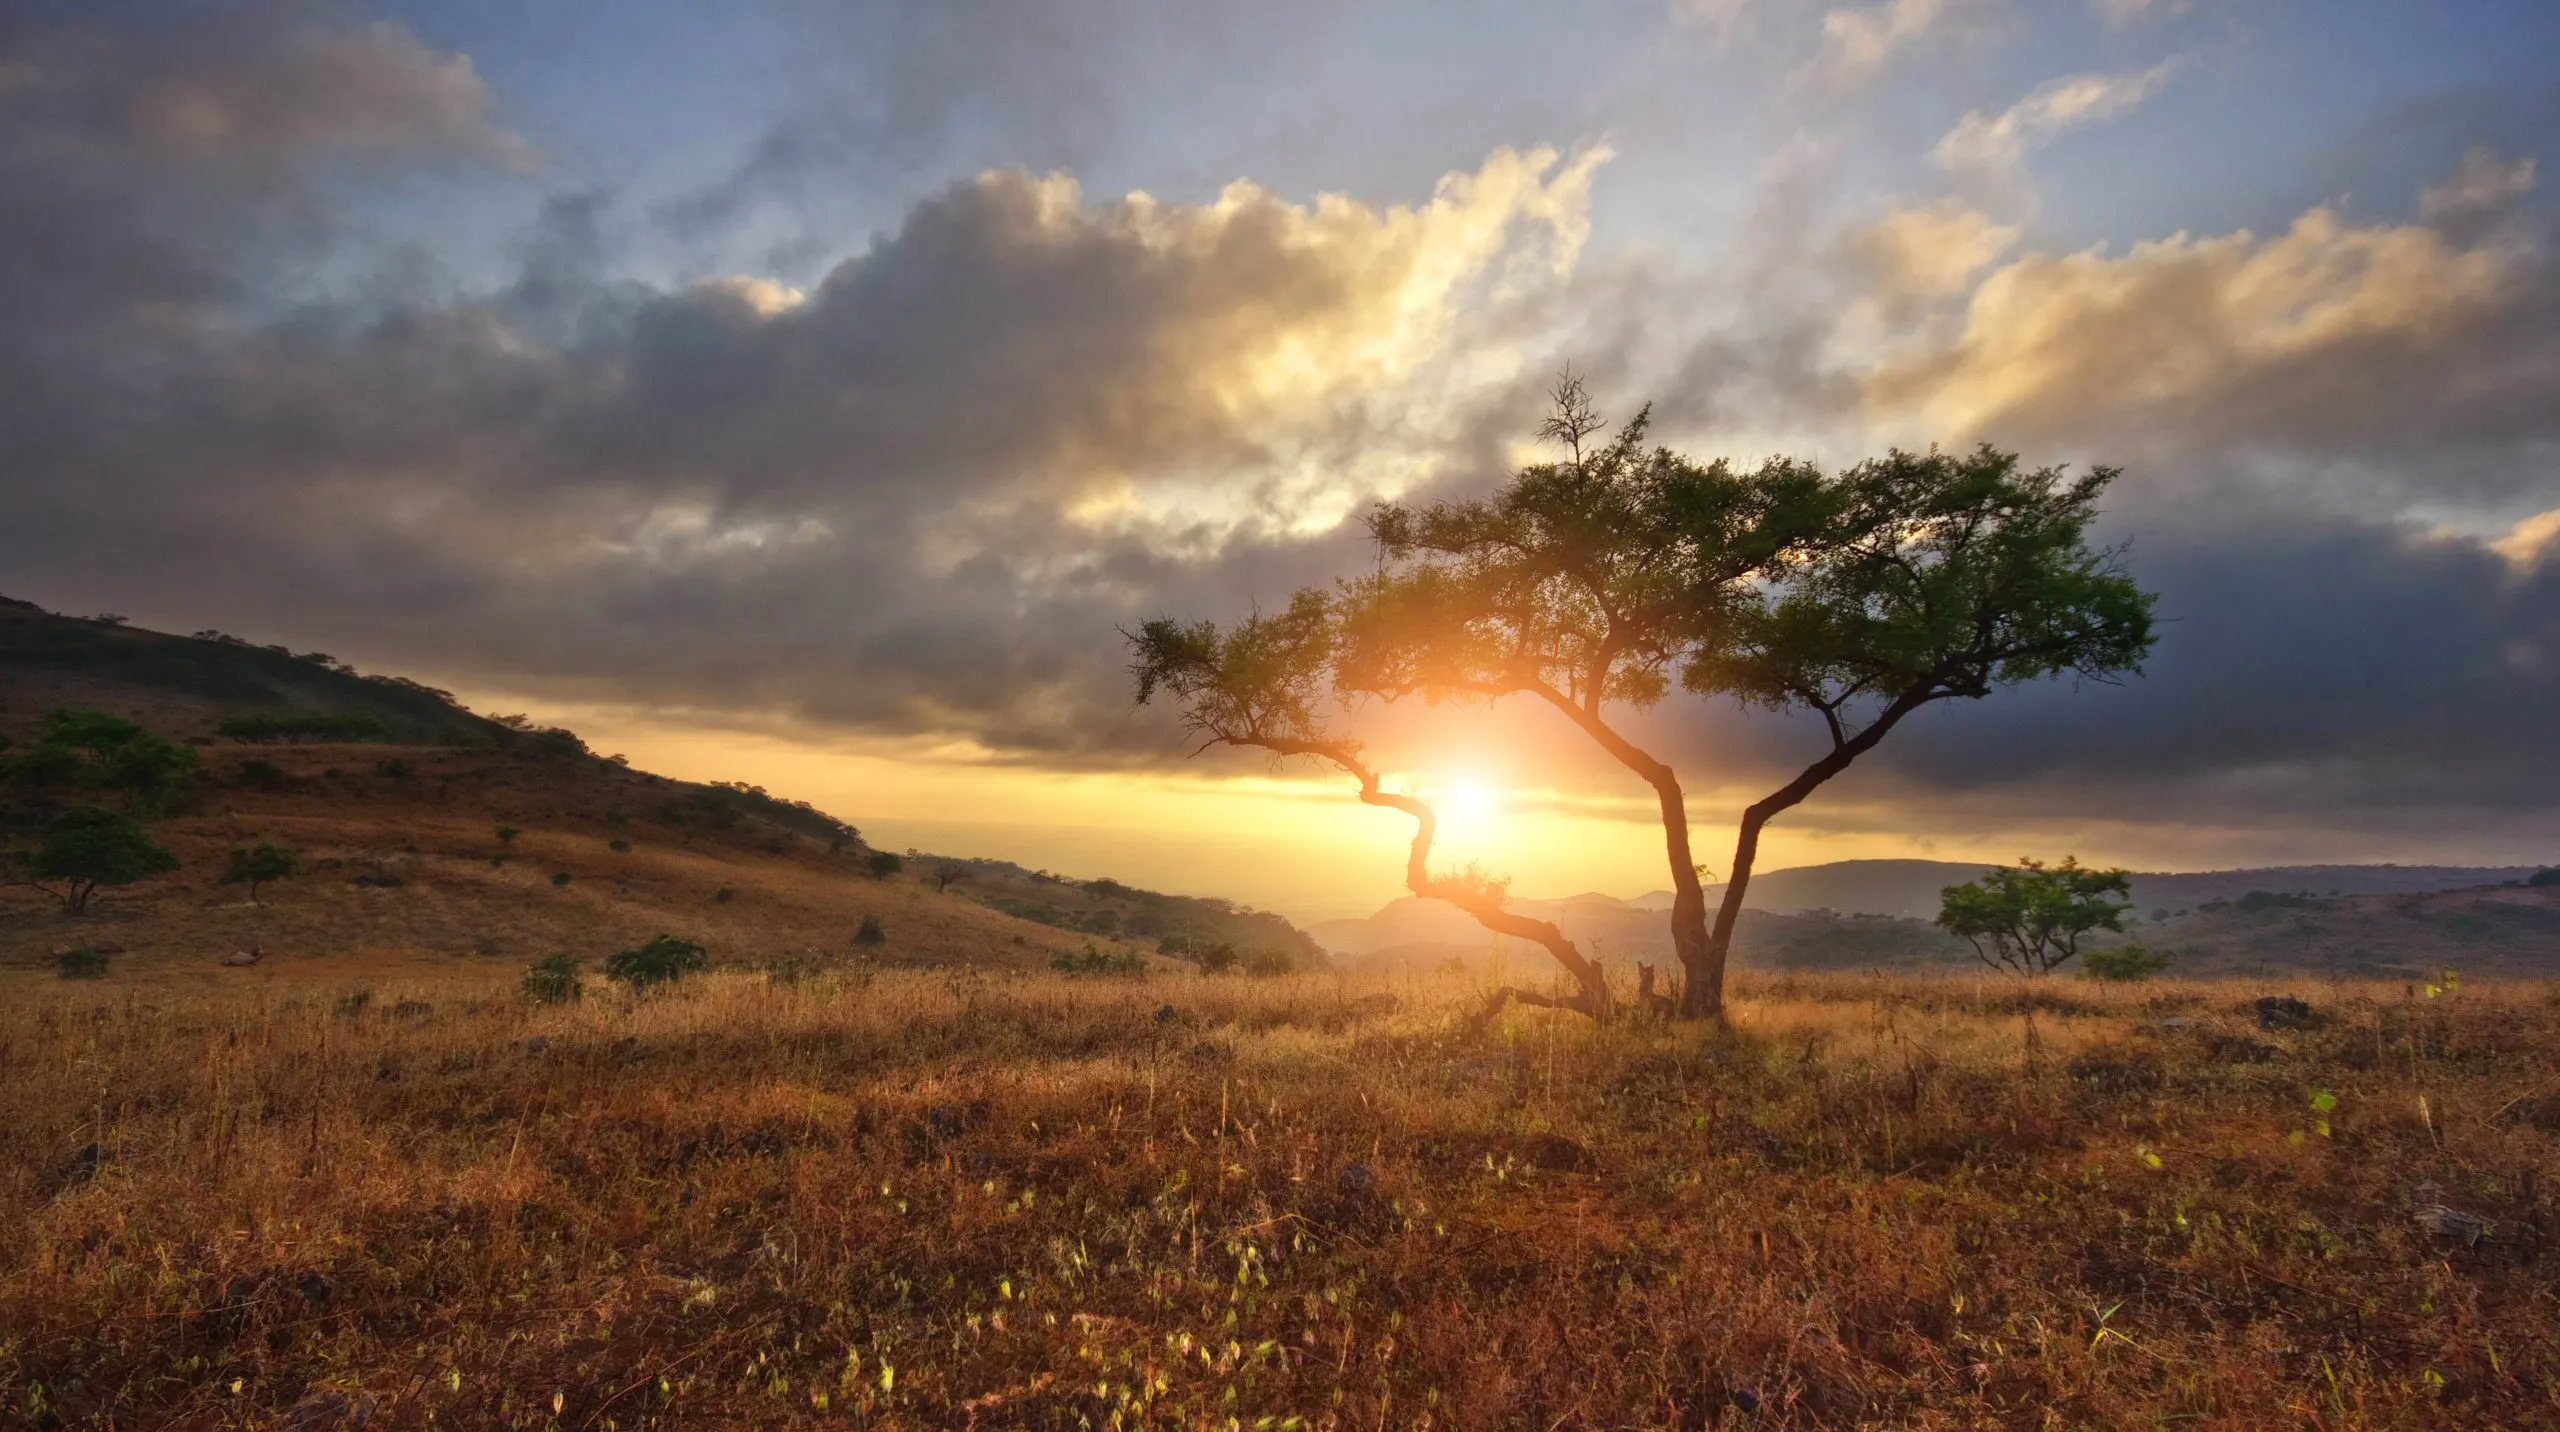 Prachtig landschap met niemandsboom in Afrika